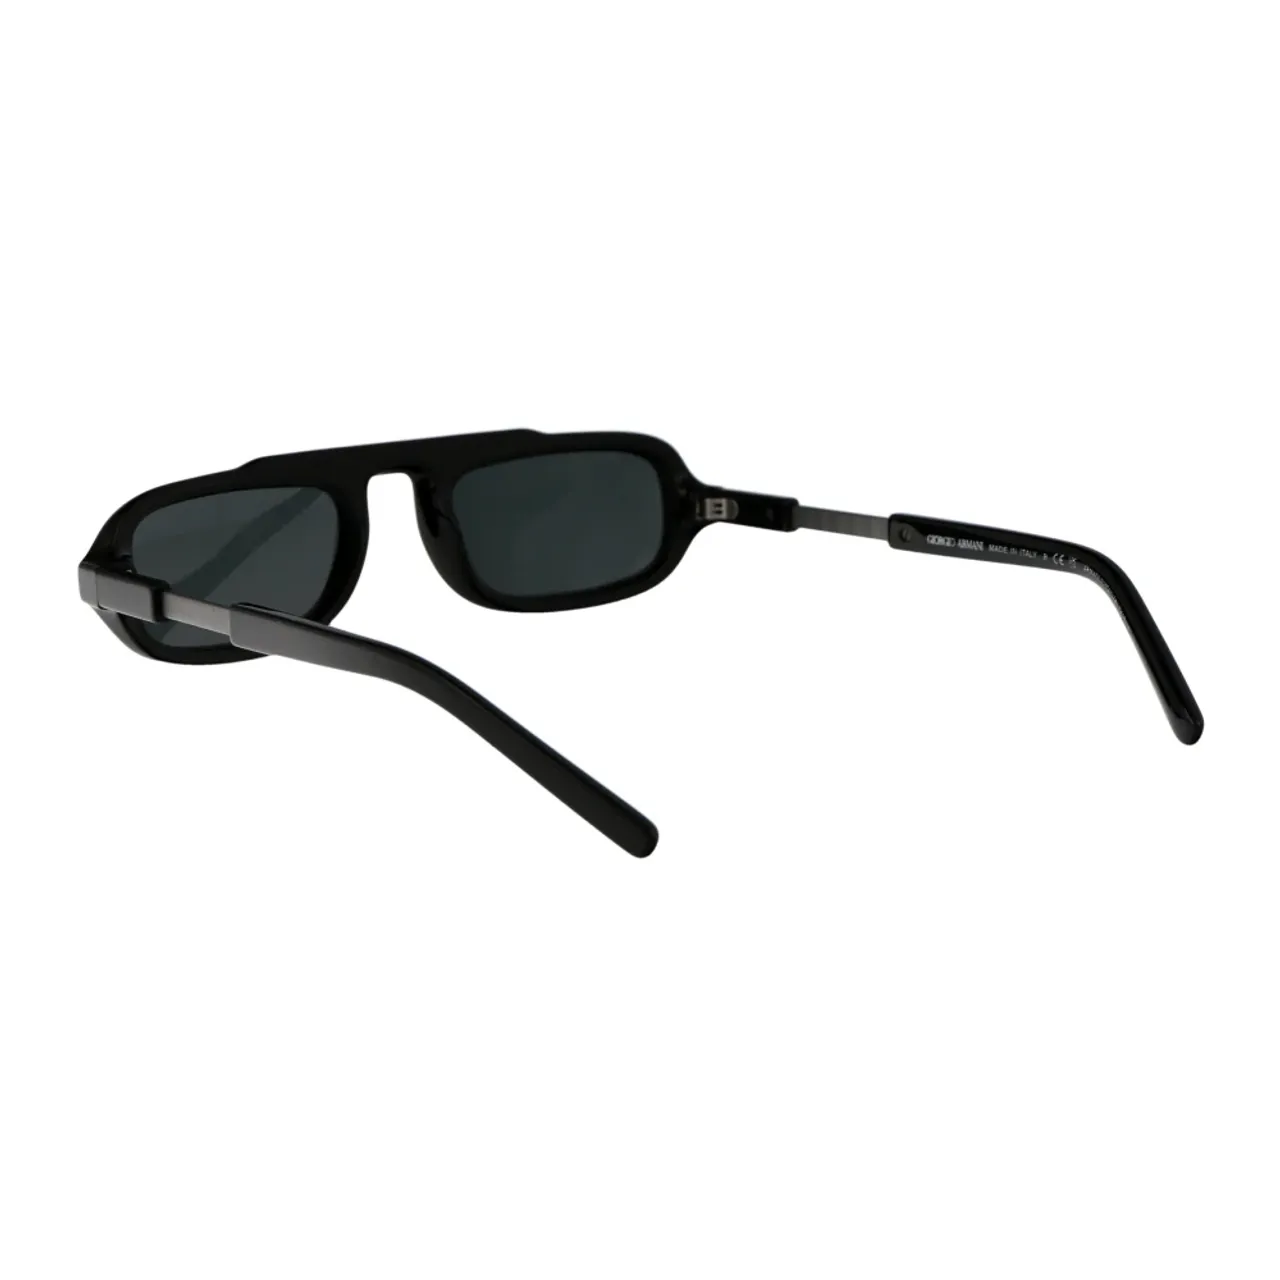 Stylische Sonnenbrille 0Ar8203 Giorgio Armani